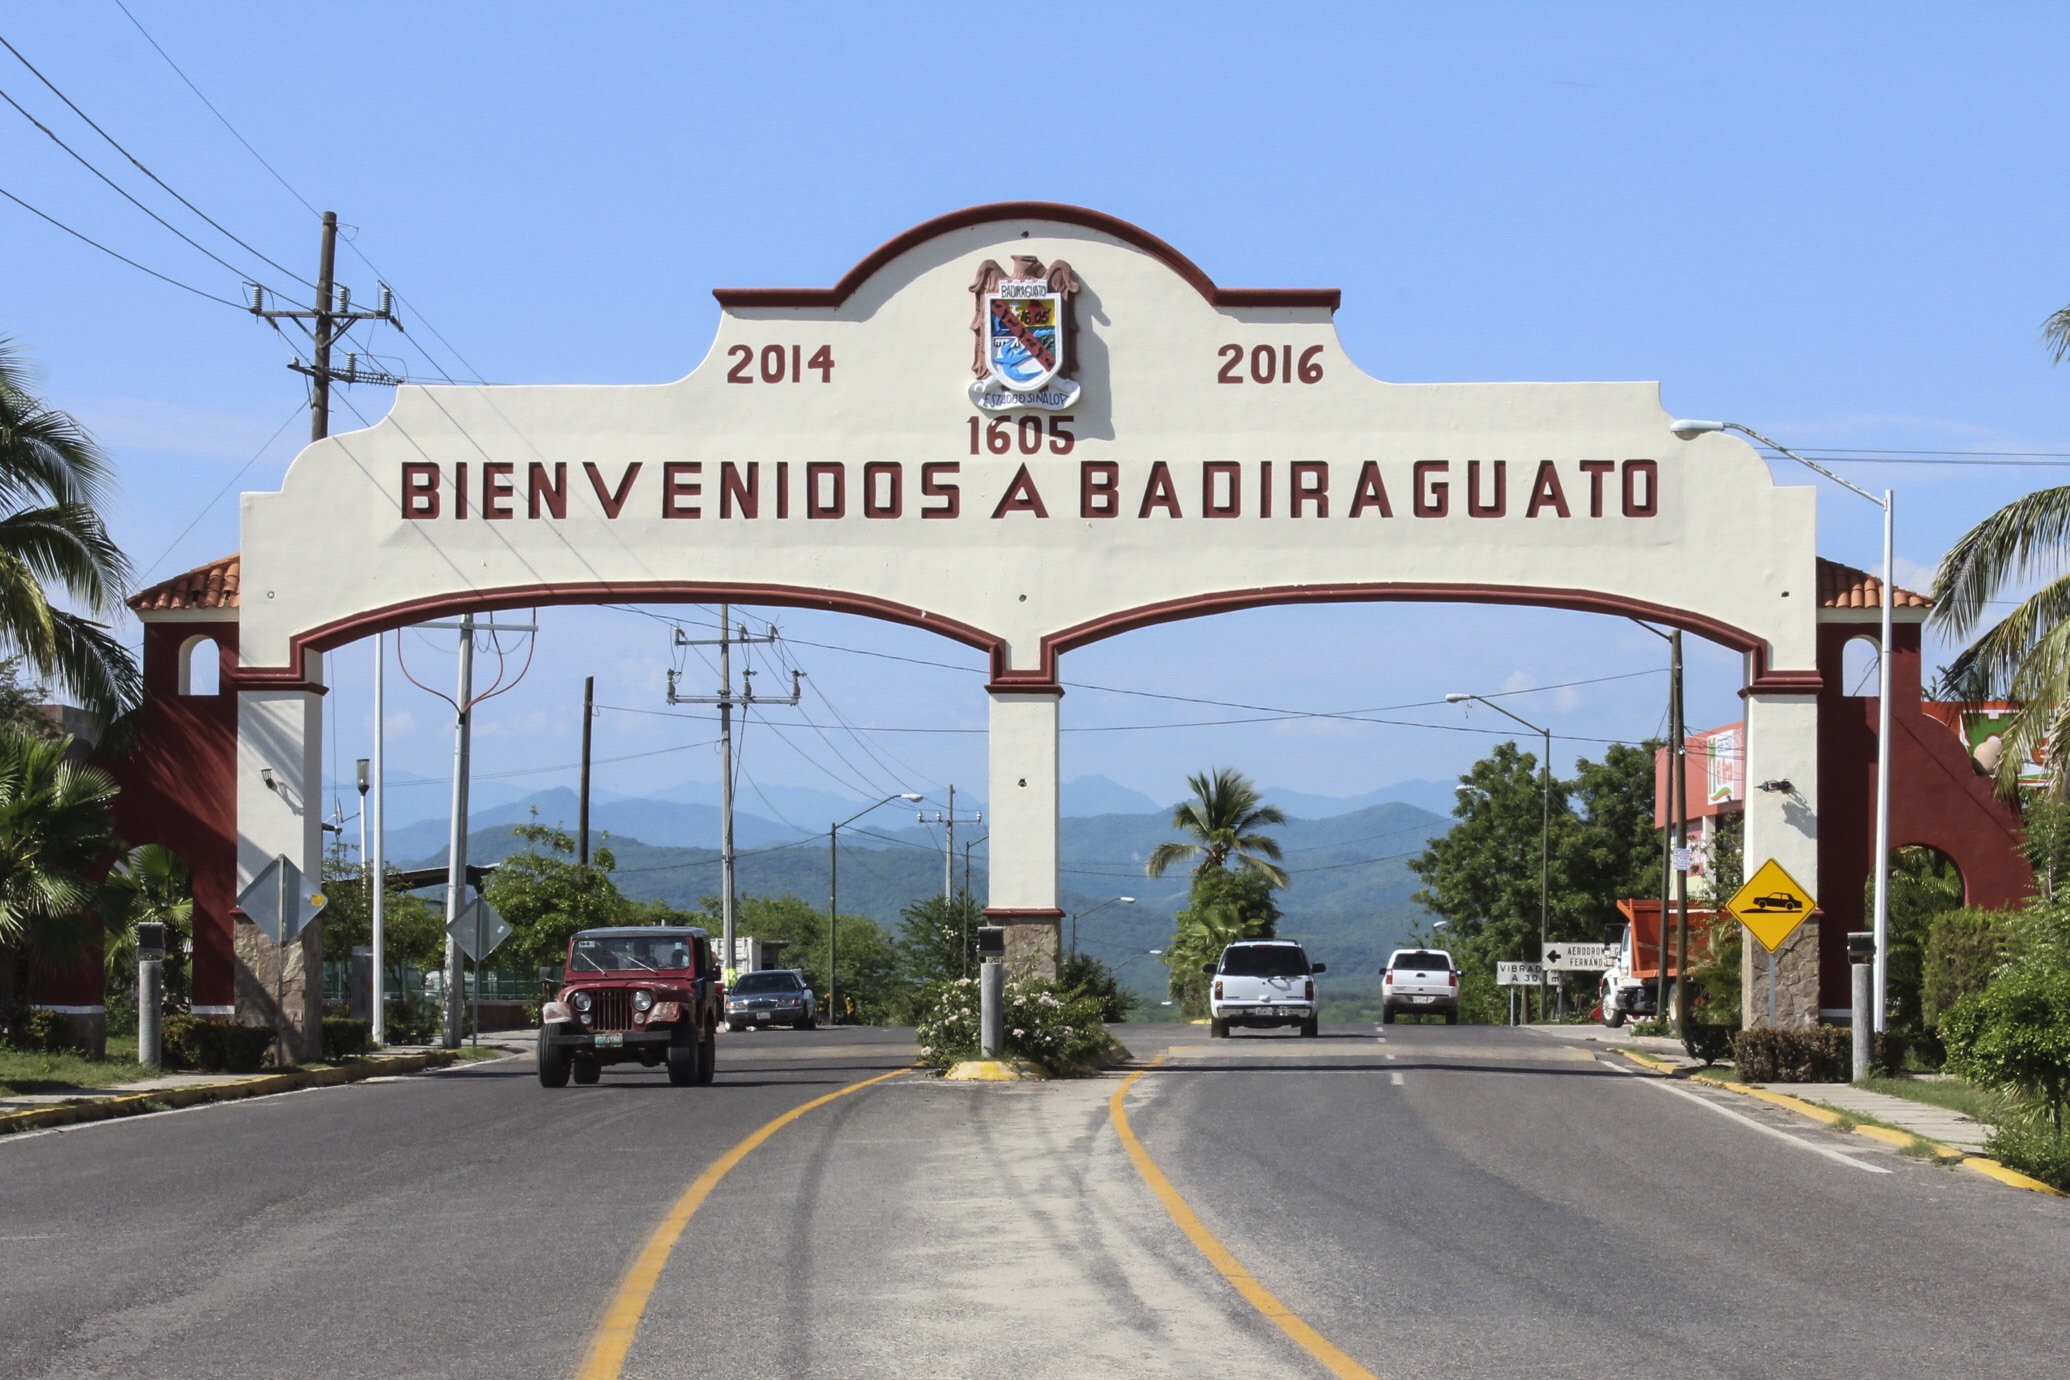 En 2015, al menos la mitad de los habitantes de Badiraguato cultivaban mariguana (Foto: Cuartoscuro)